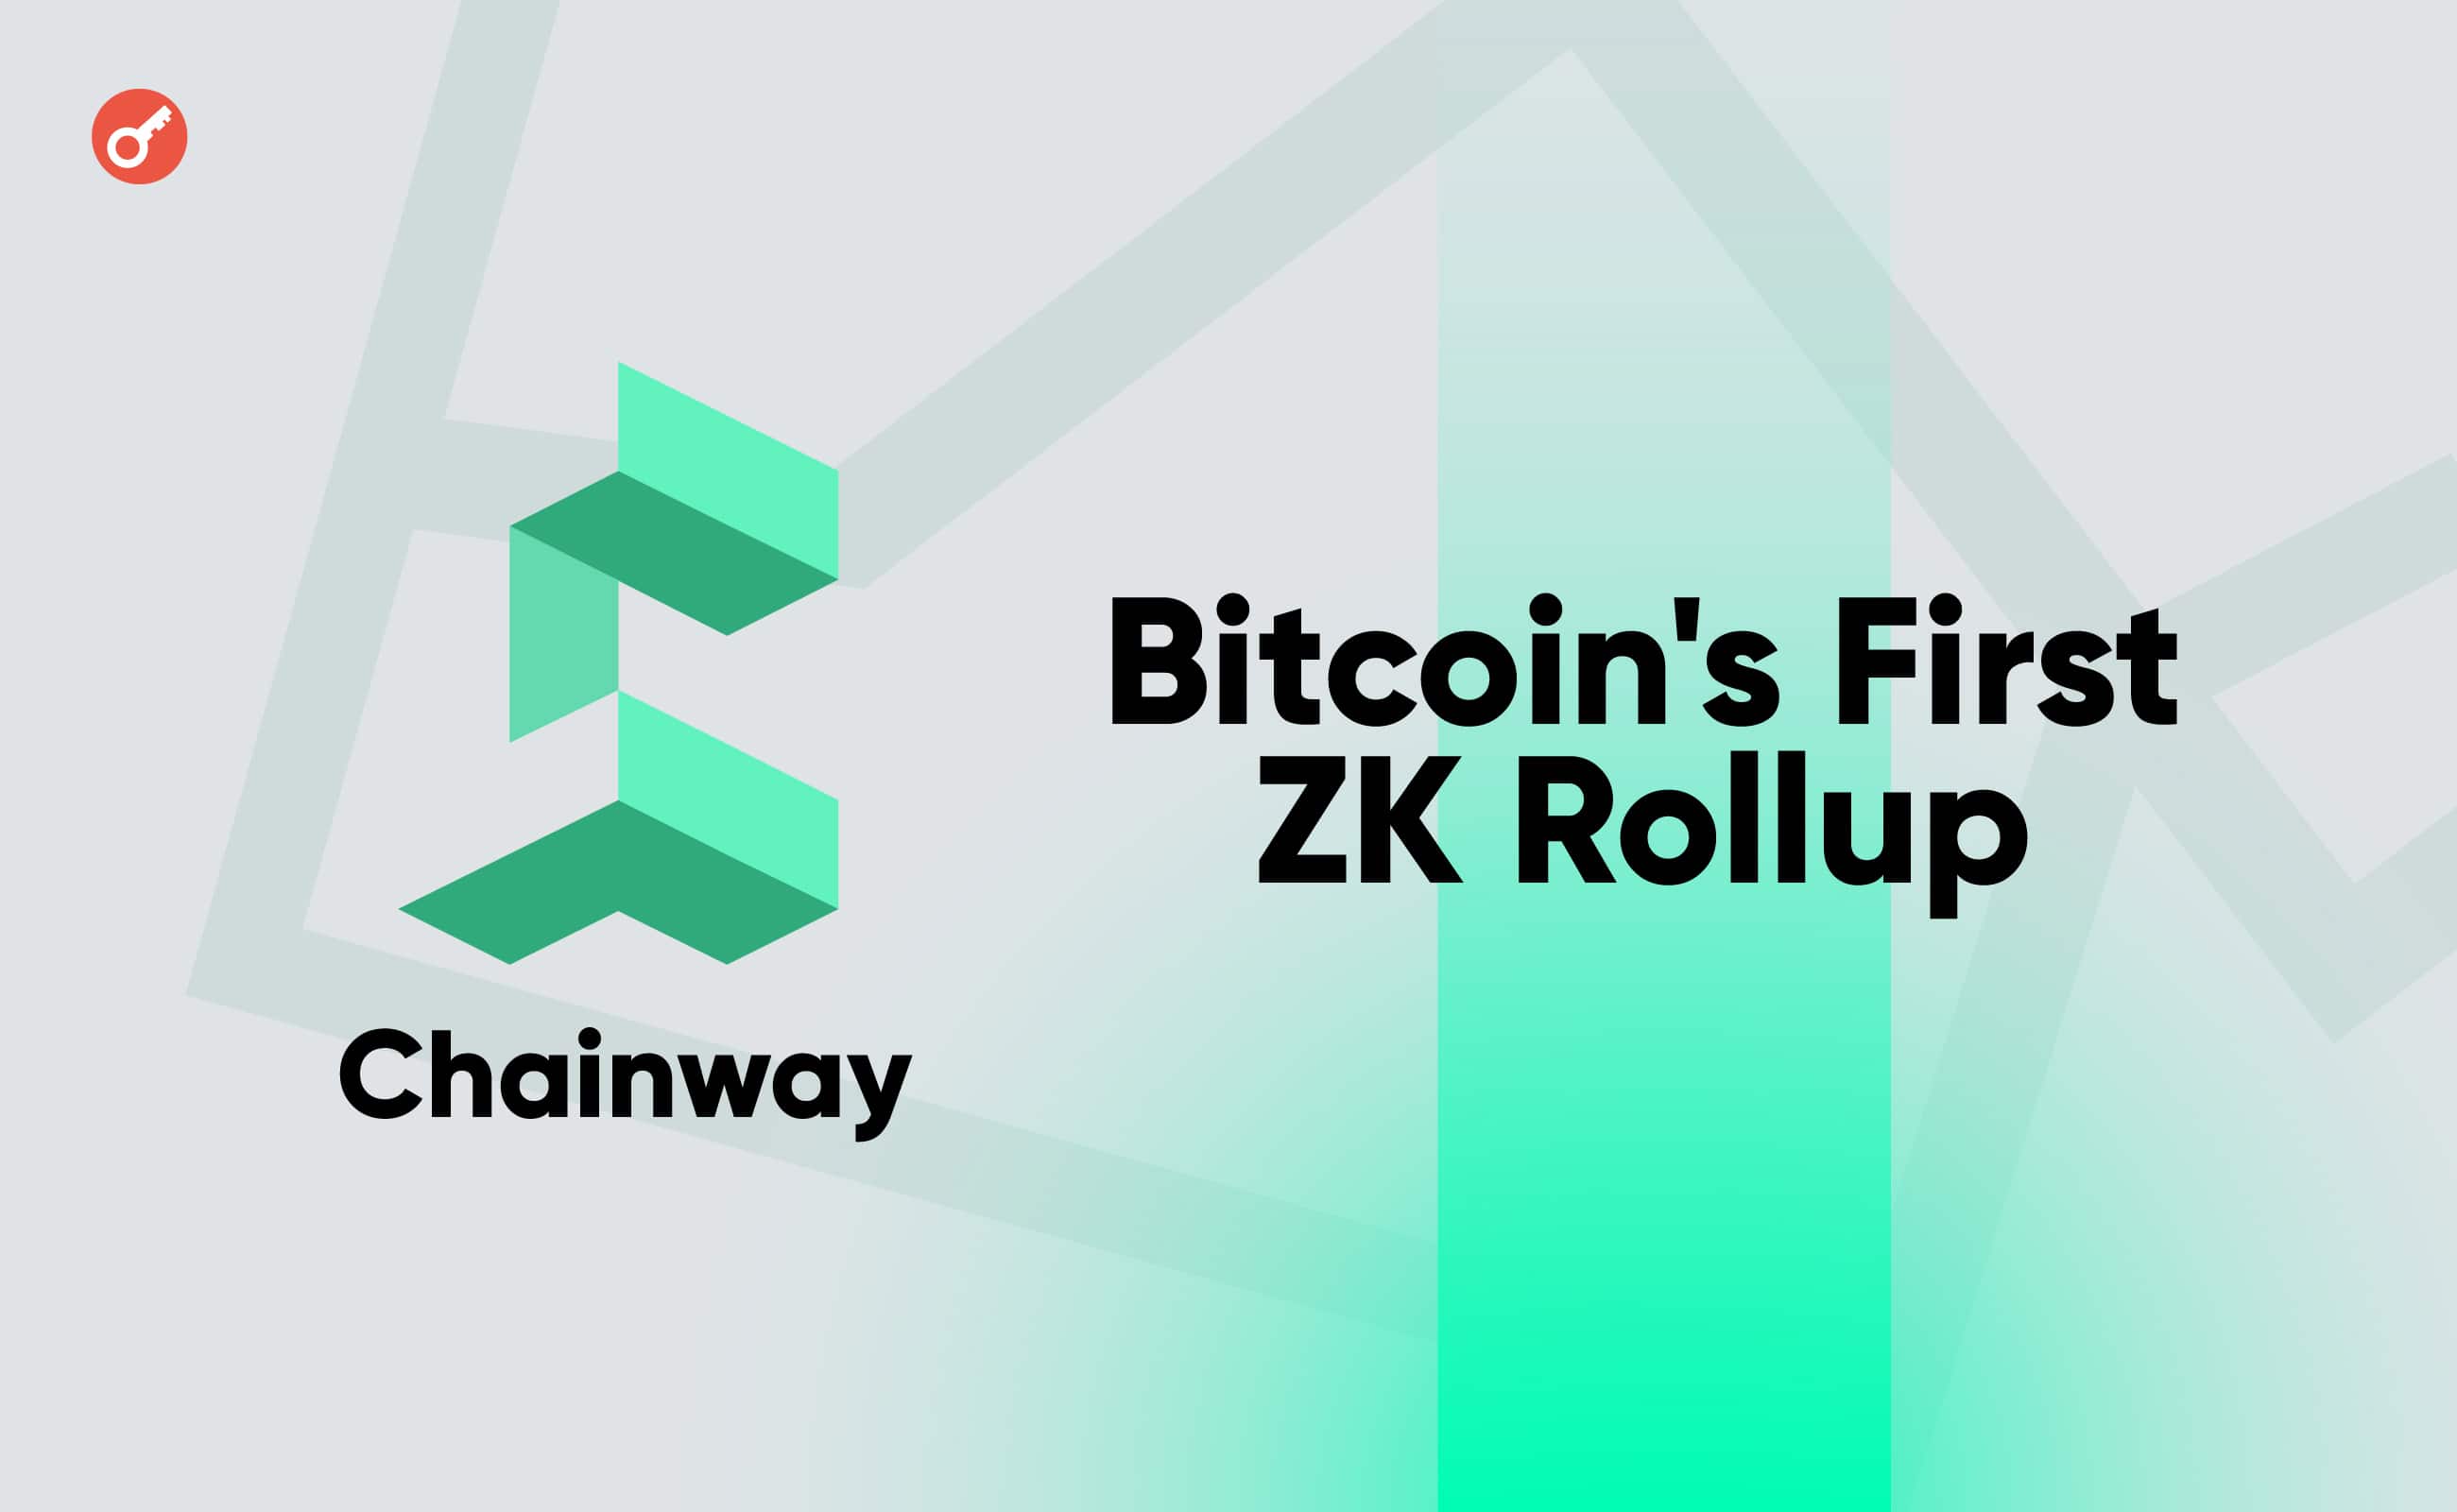 Chainway Labs залучила $2,7 млн на розробку першого ZK-Rollup на базі біткоїна. Головний колаж новини.